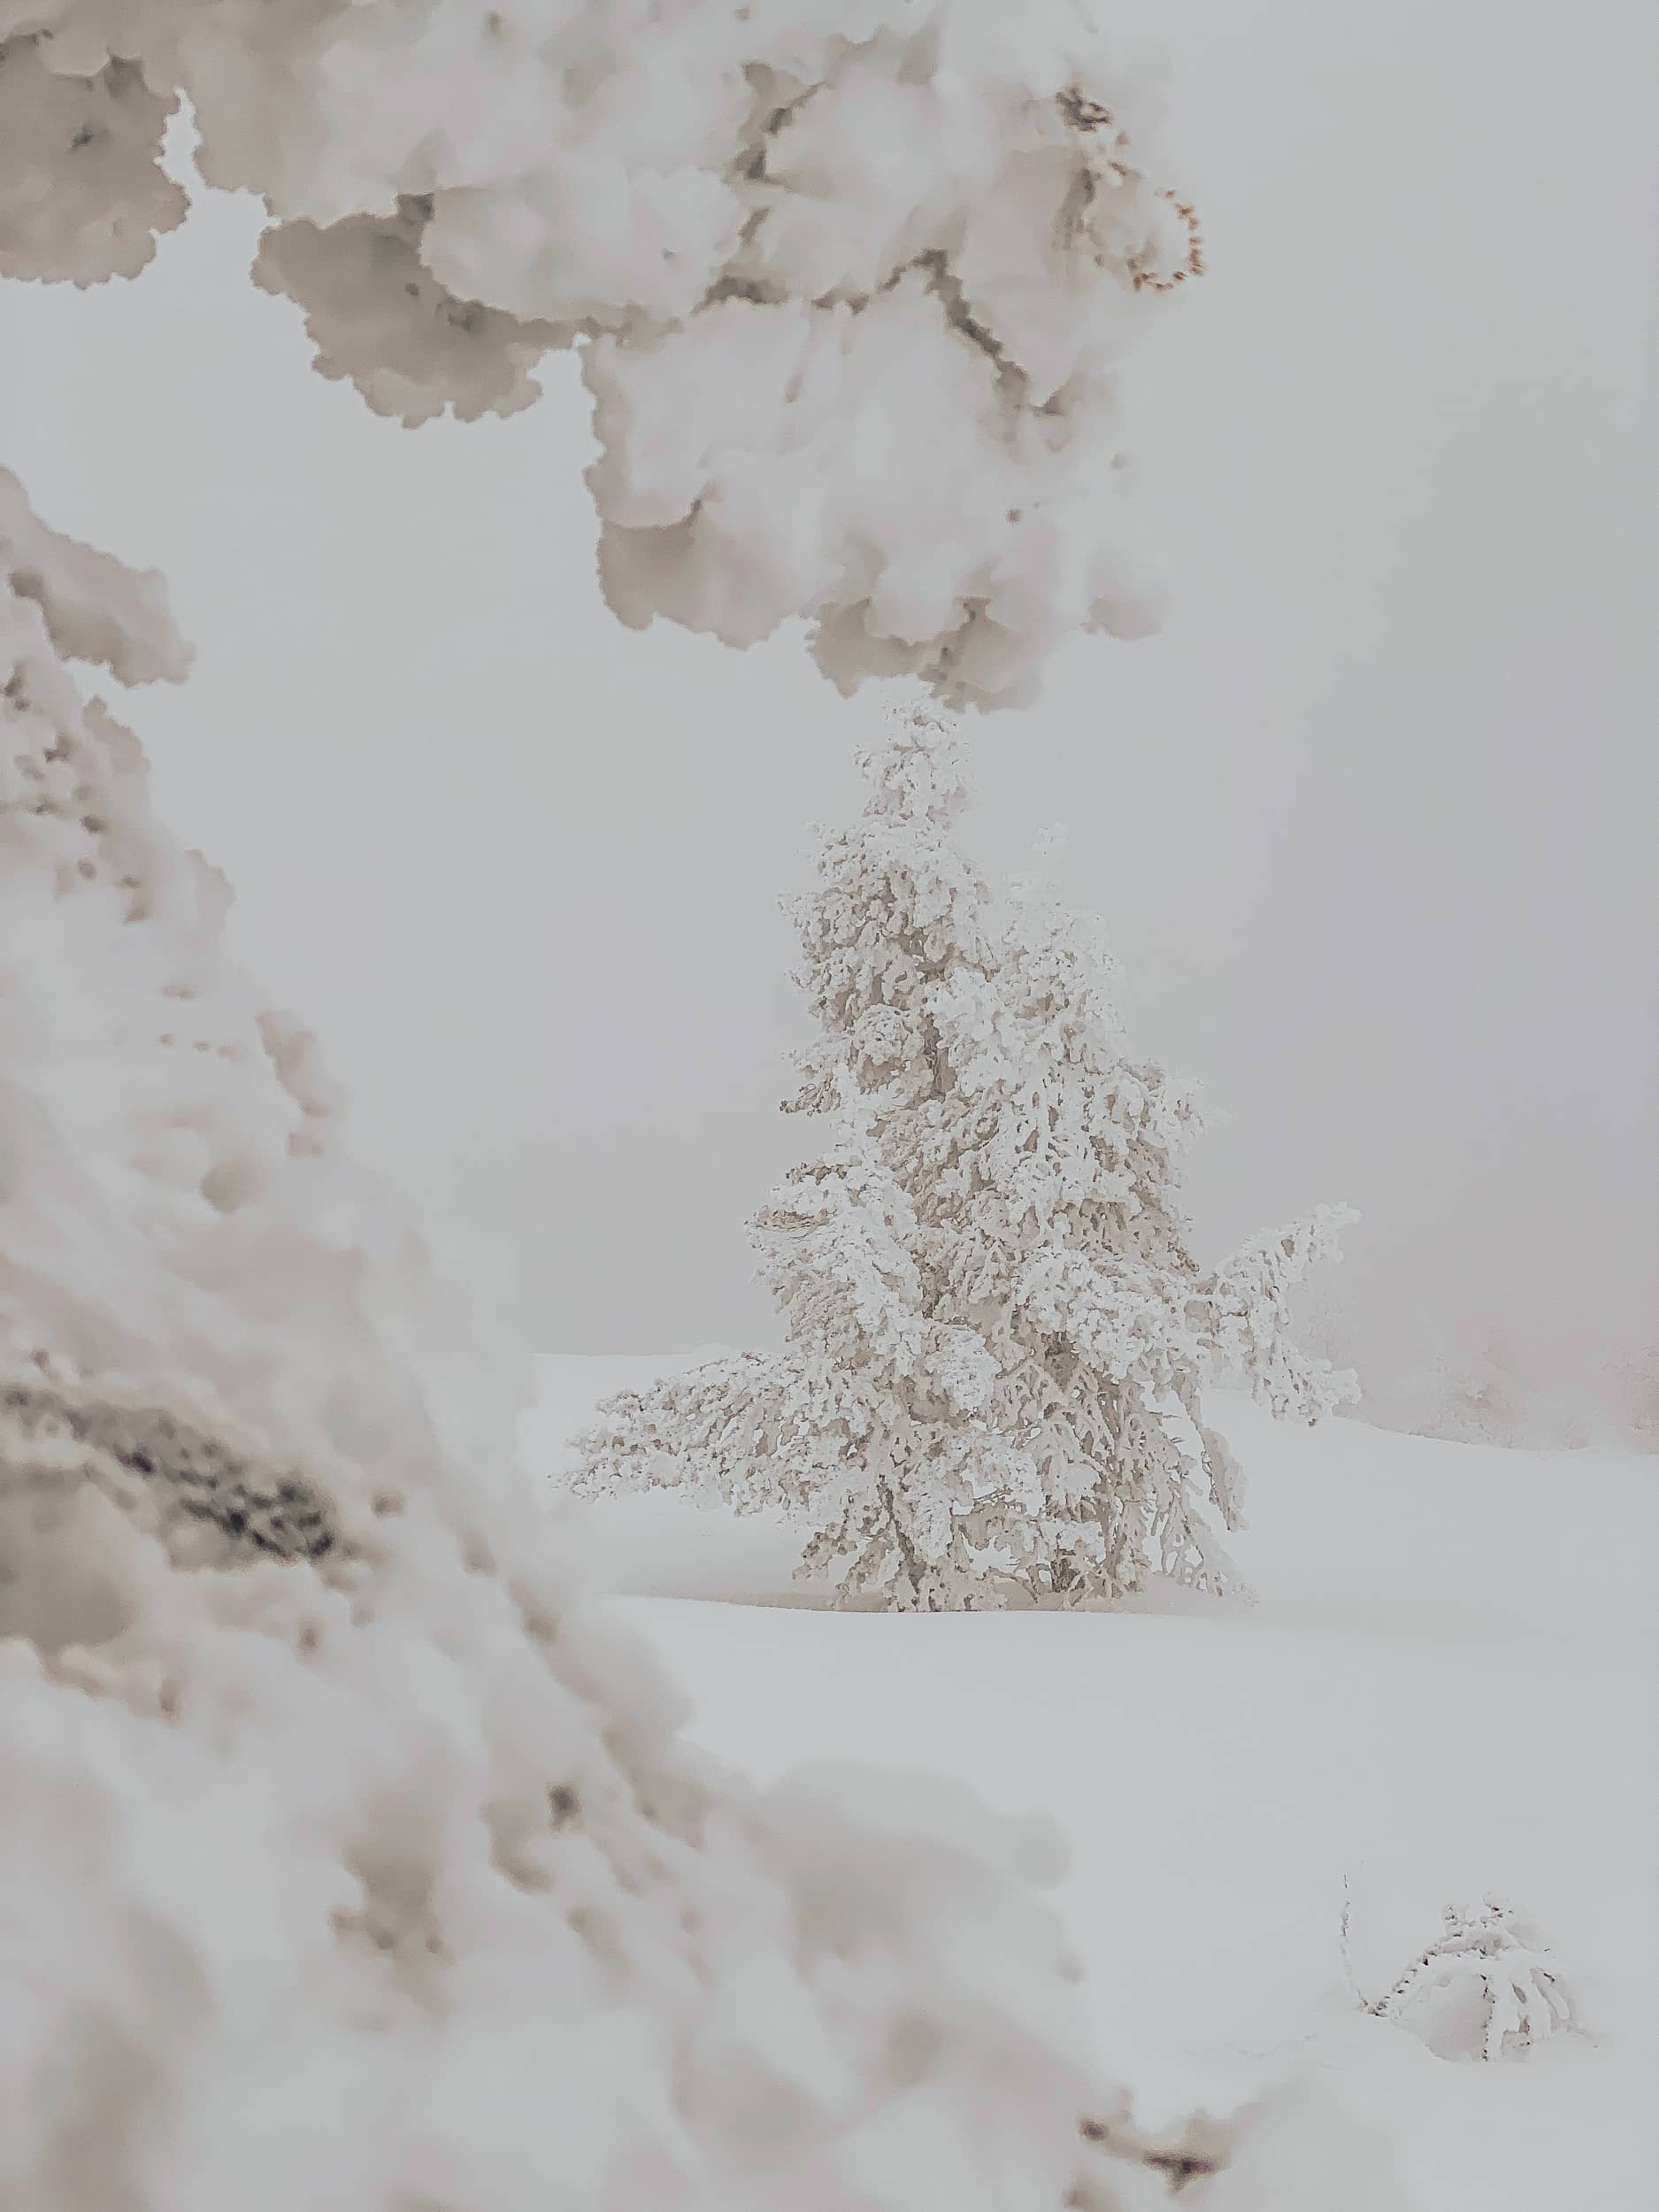 Laponie finlandaise en hiver neige 